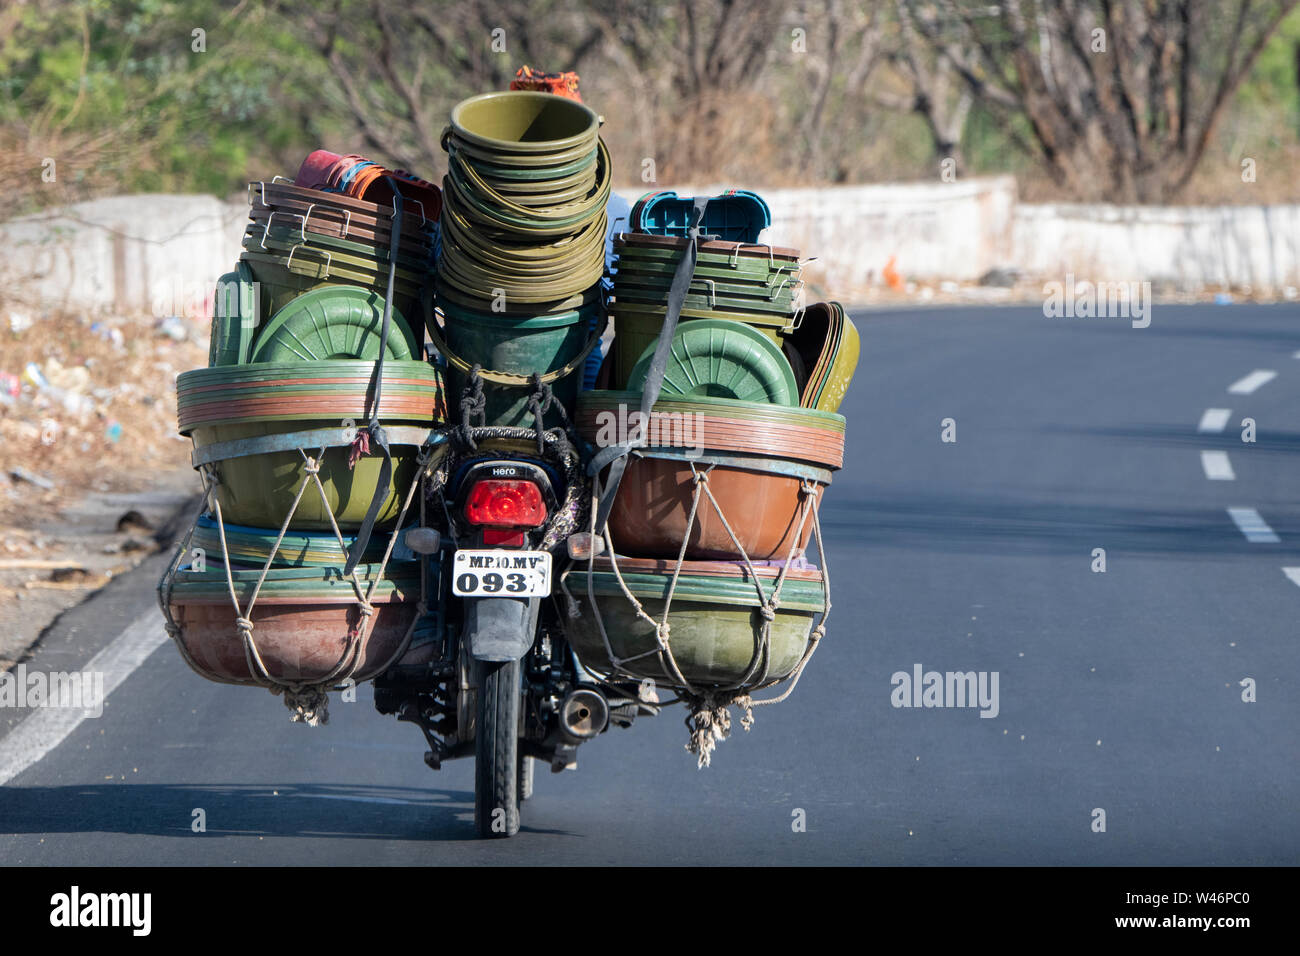 Indien, Bundesstaat Maharashtra, Aurangabad. Typische Straße Blick auf Motorrad mit einer vollen Ladung von Kunststoffbehältern. Stockfoto